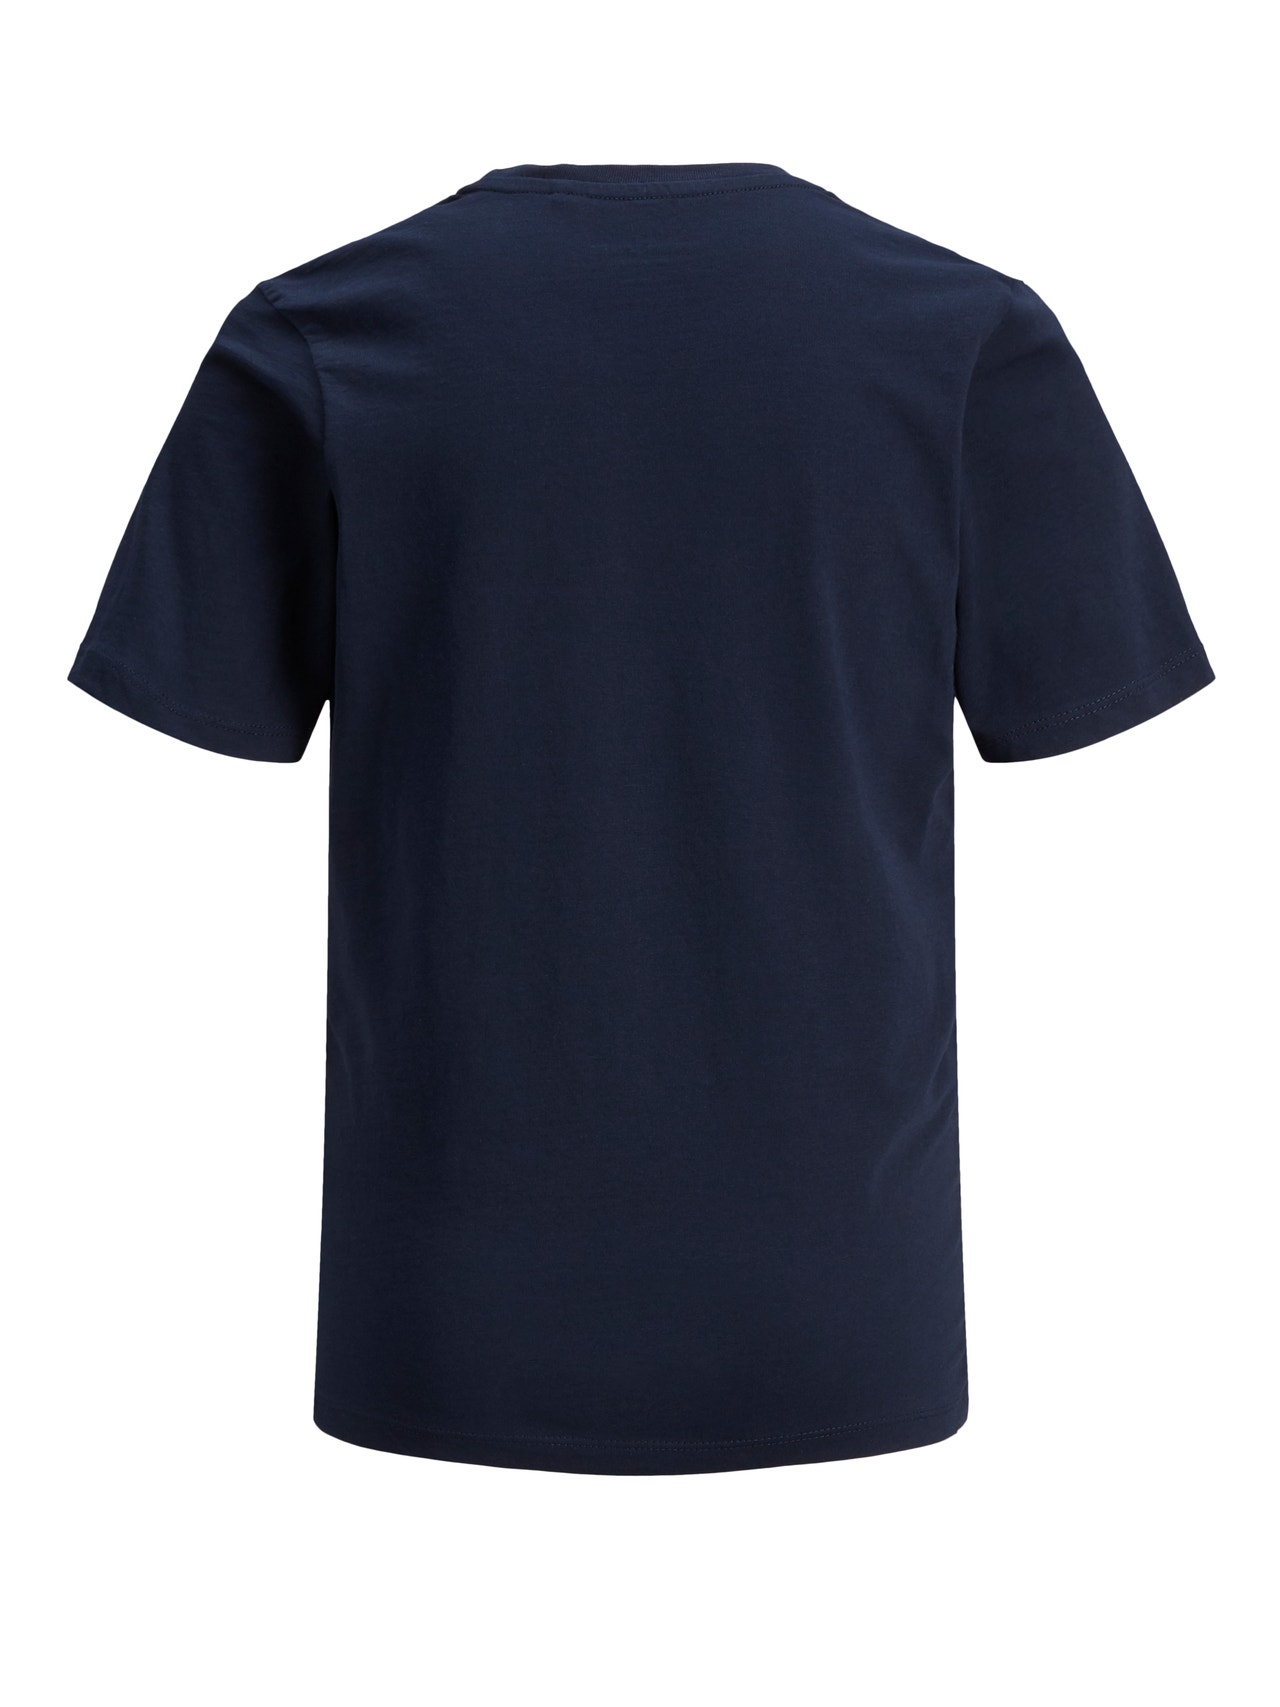 Jack & Jones Logotipas Marškinėliai For boys -Navy Blazer - 12152730